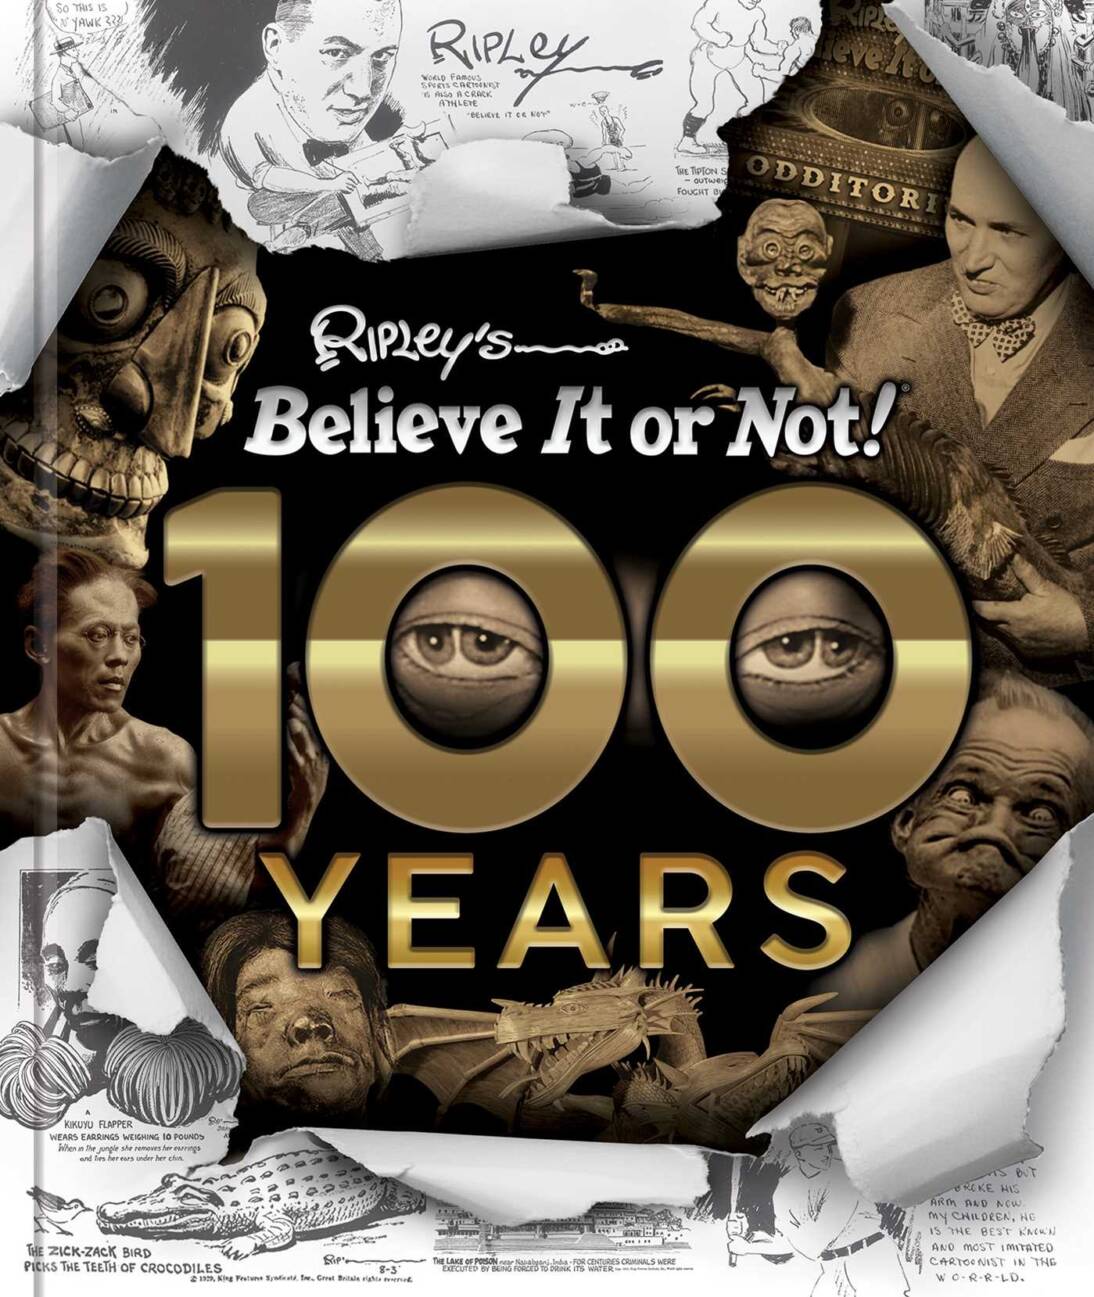 Ripley’s Believe It or Not! 100 Years